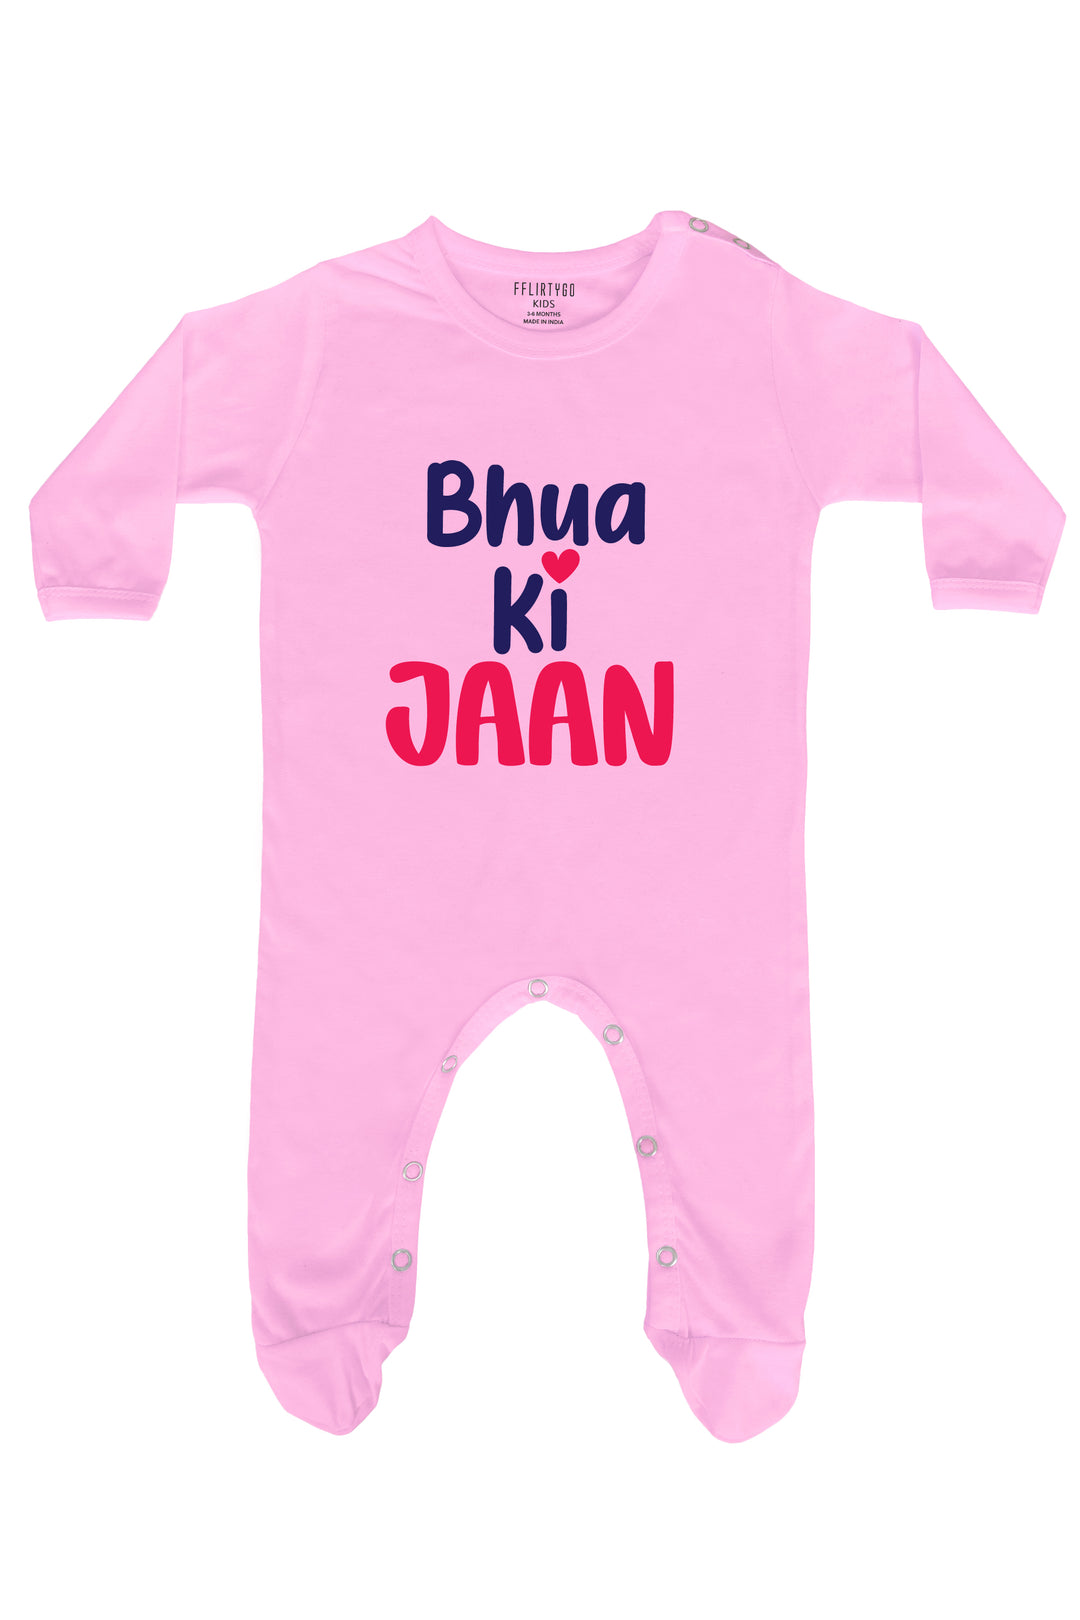 Bhua Ki Jaan Baby Romper | Onesies